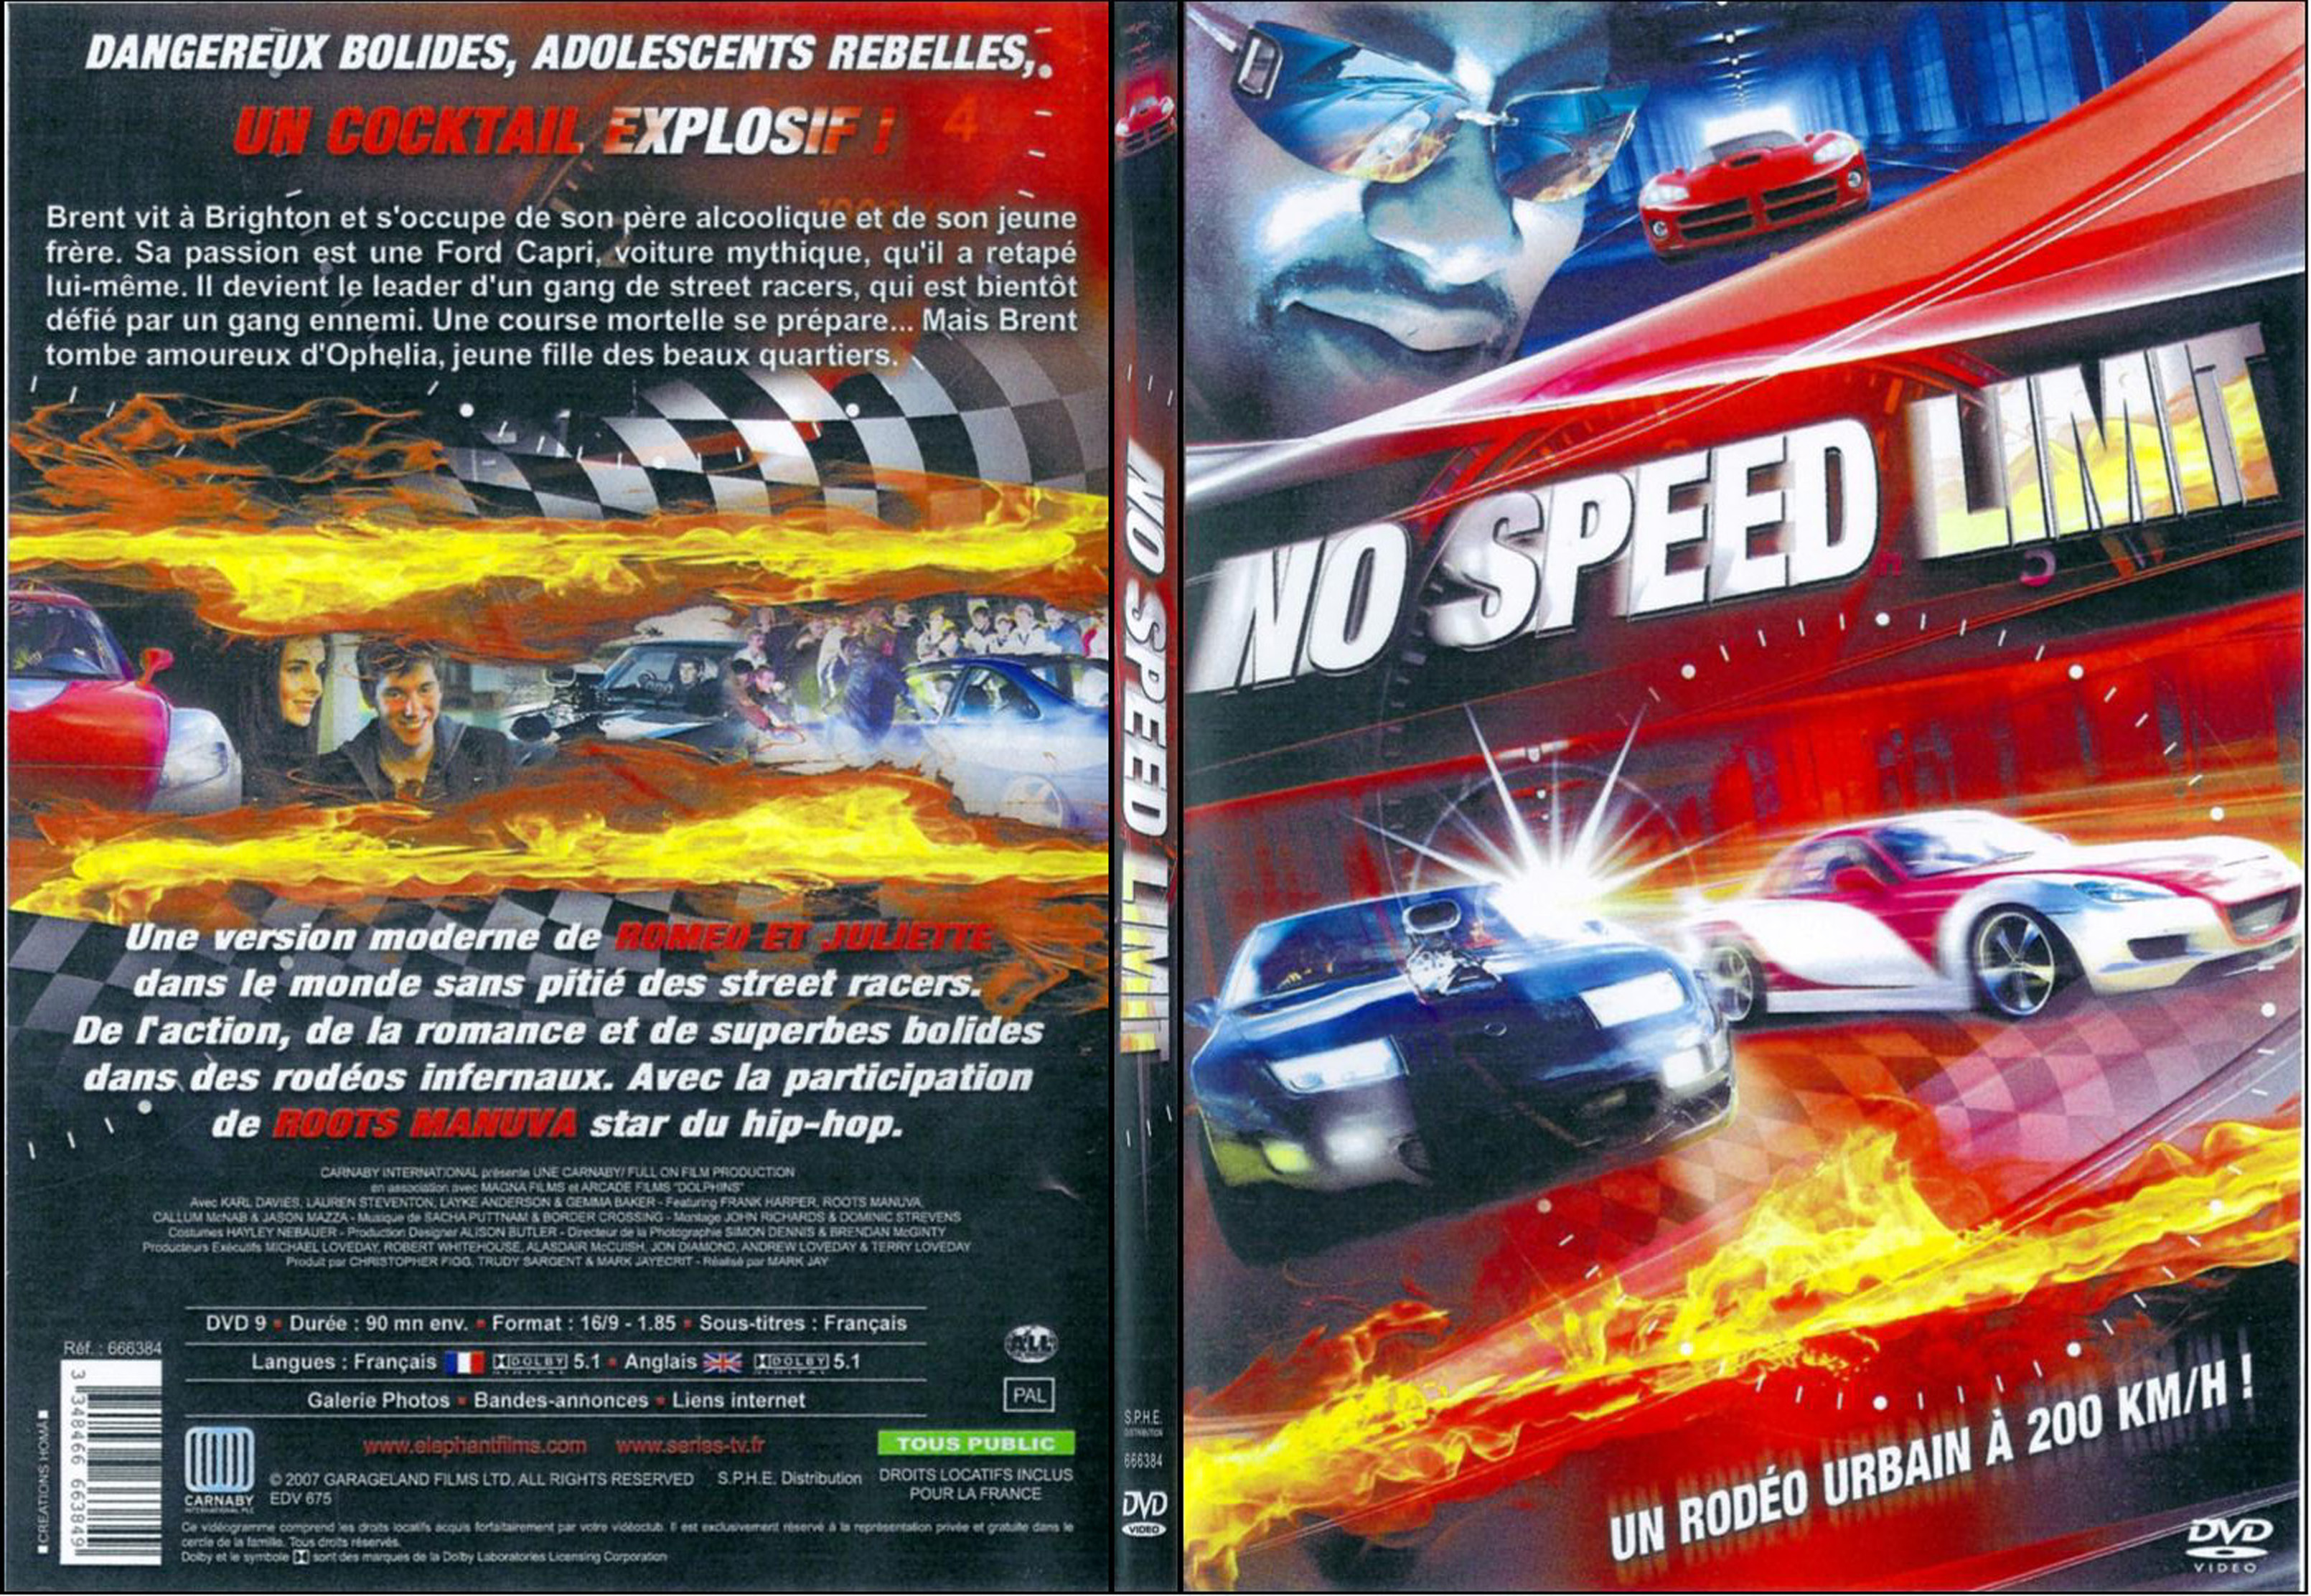 Jaquette DVD No speed limit - SLIM